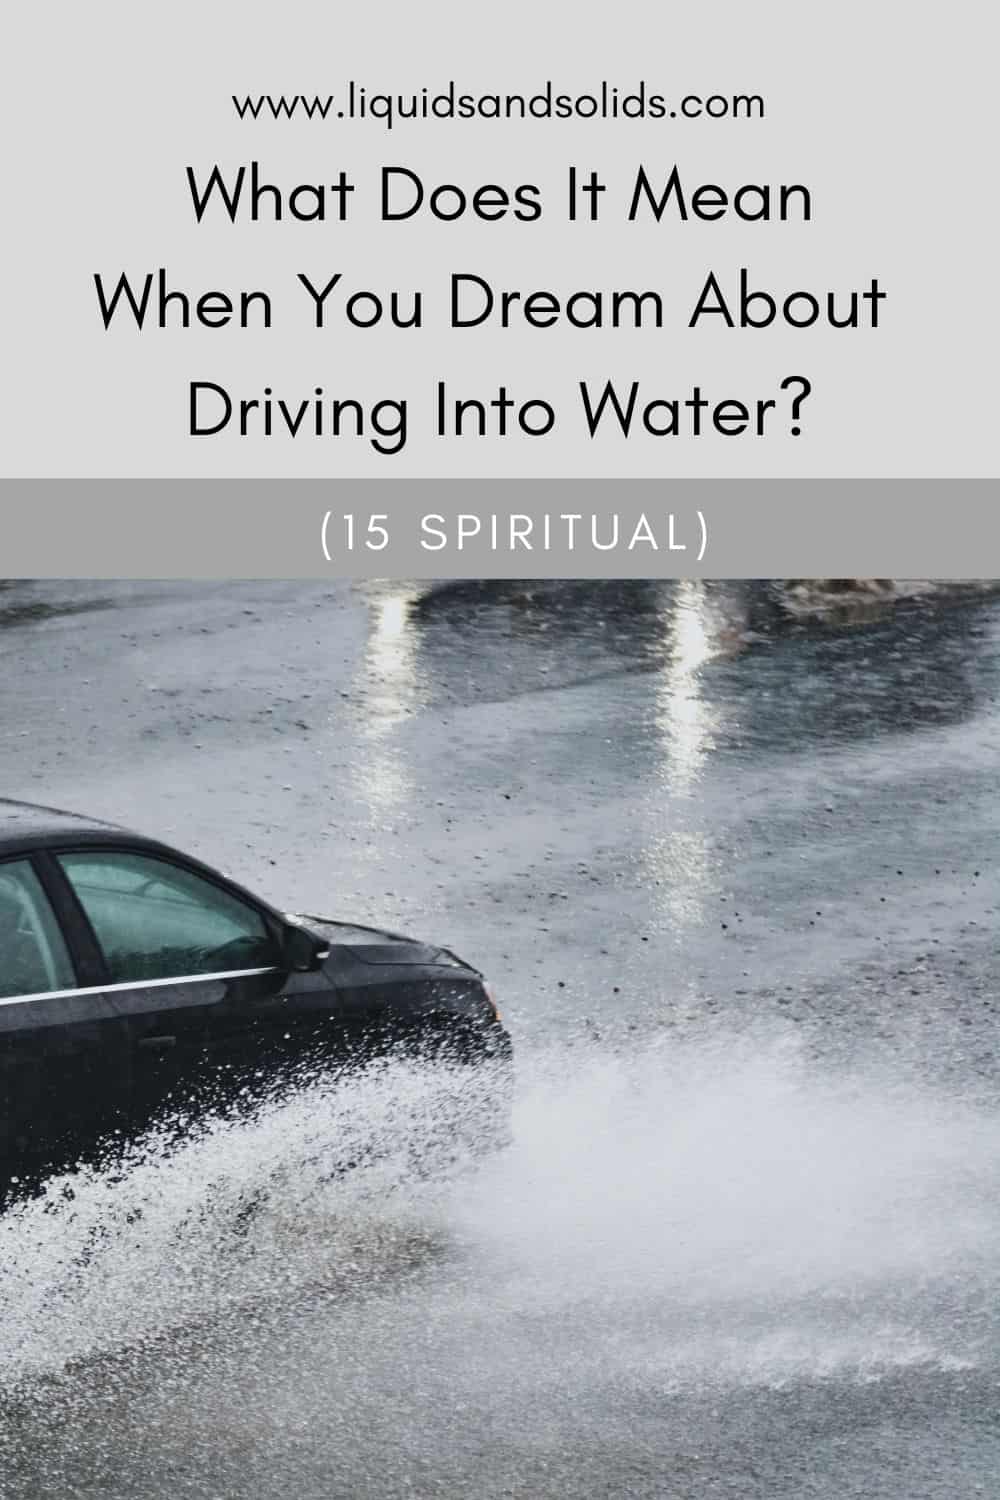  هل تحلم بالقيادة في الماء؟ (15 معاني روحية)